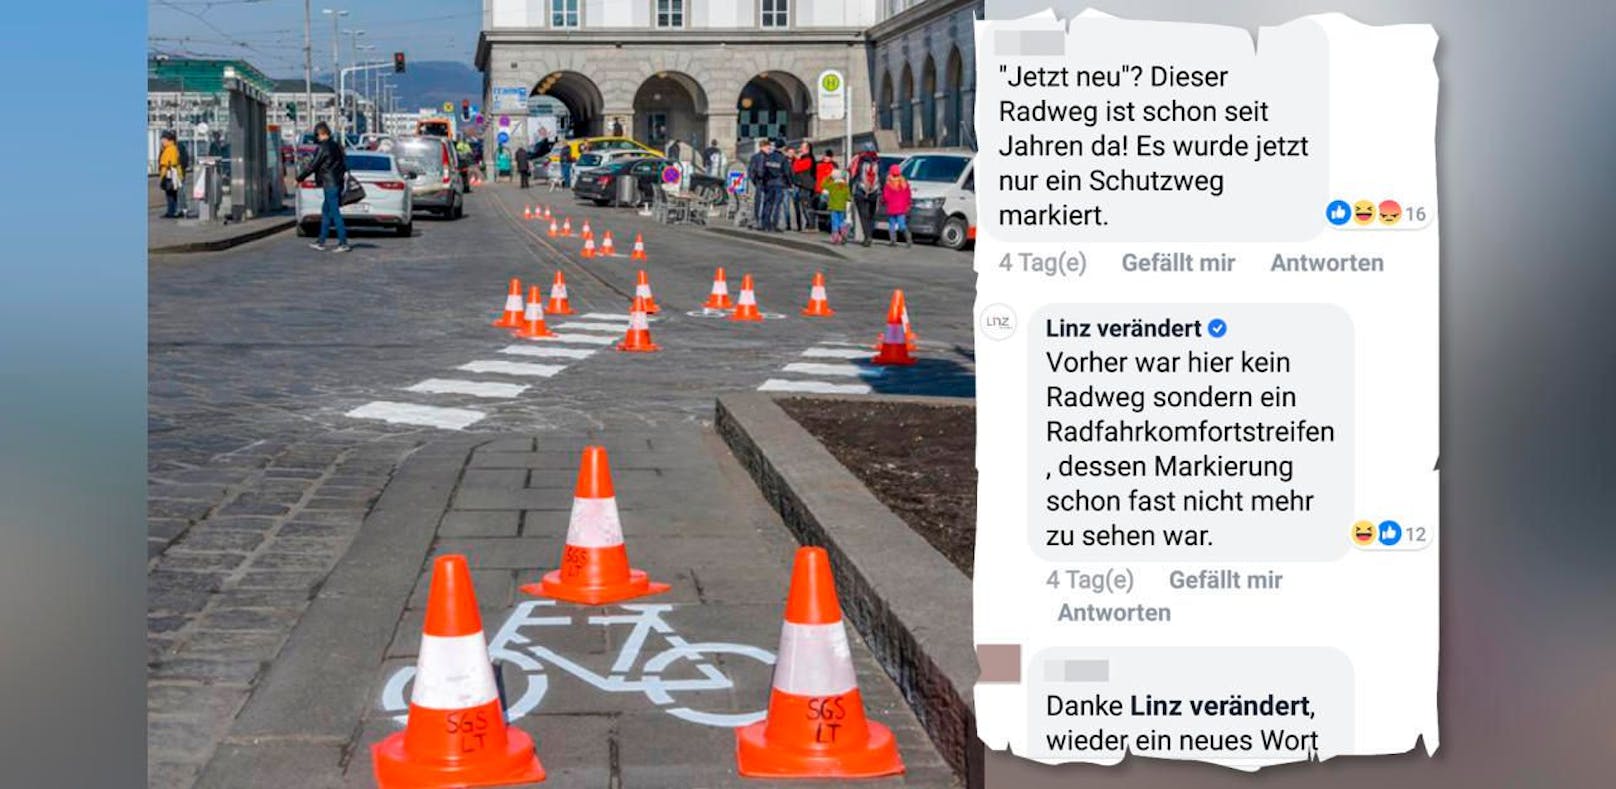 Der &quot;neue&quot; Radfahrkomfortstreifen am Linzer Hauptplatz sorgt für viele Lacher im Netz.